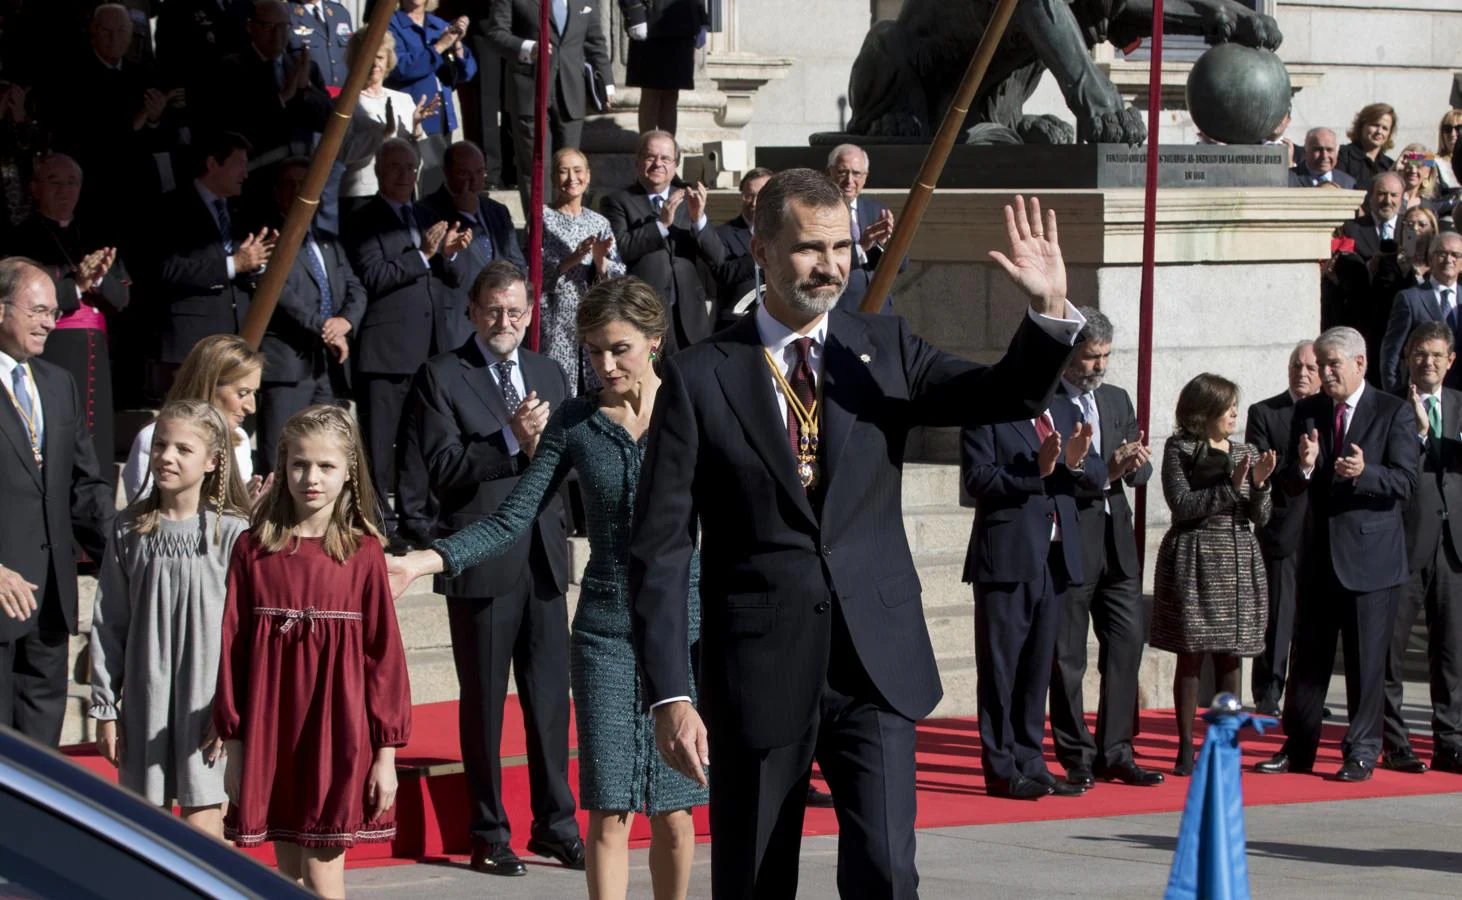 Sus Majestades los Reyes, acompañados por la Princesa de Asturias y la Infanta Sofía, en la Apertura Solemne de la XII Legislatura el 17 de noviembre de 2016 en una sesión conjunta de las Cortes Generales en el Congreso de los Diputados. 